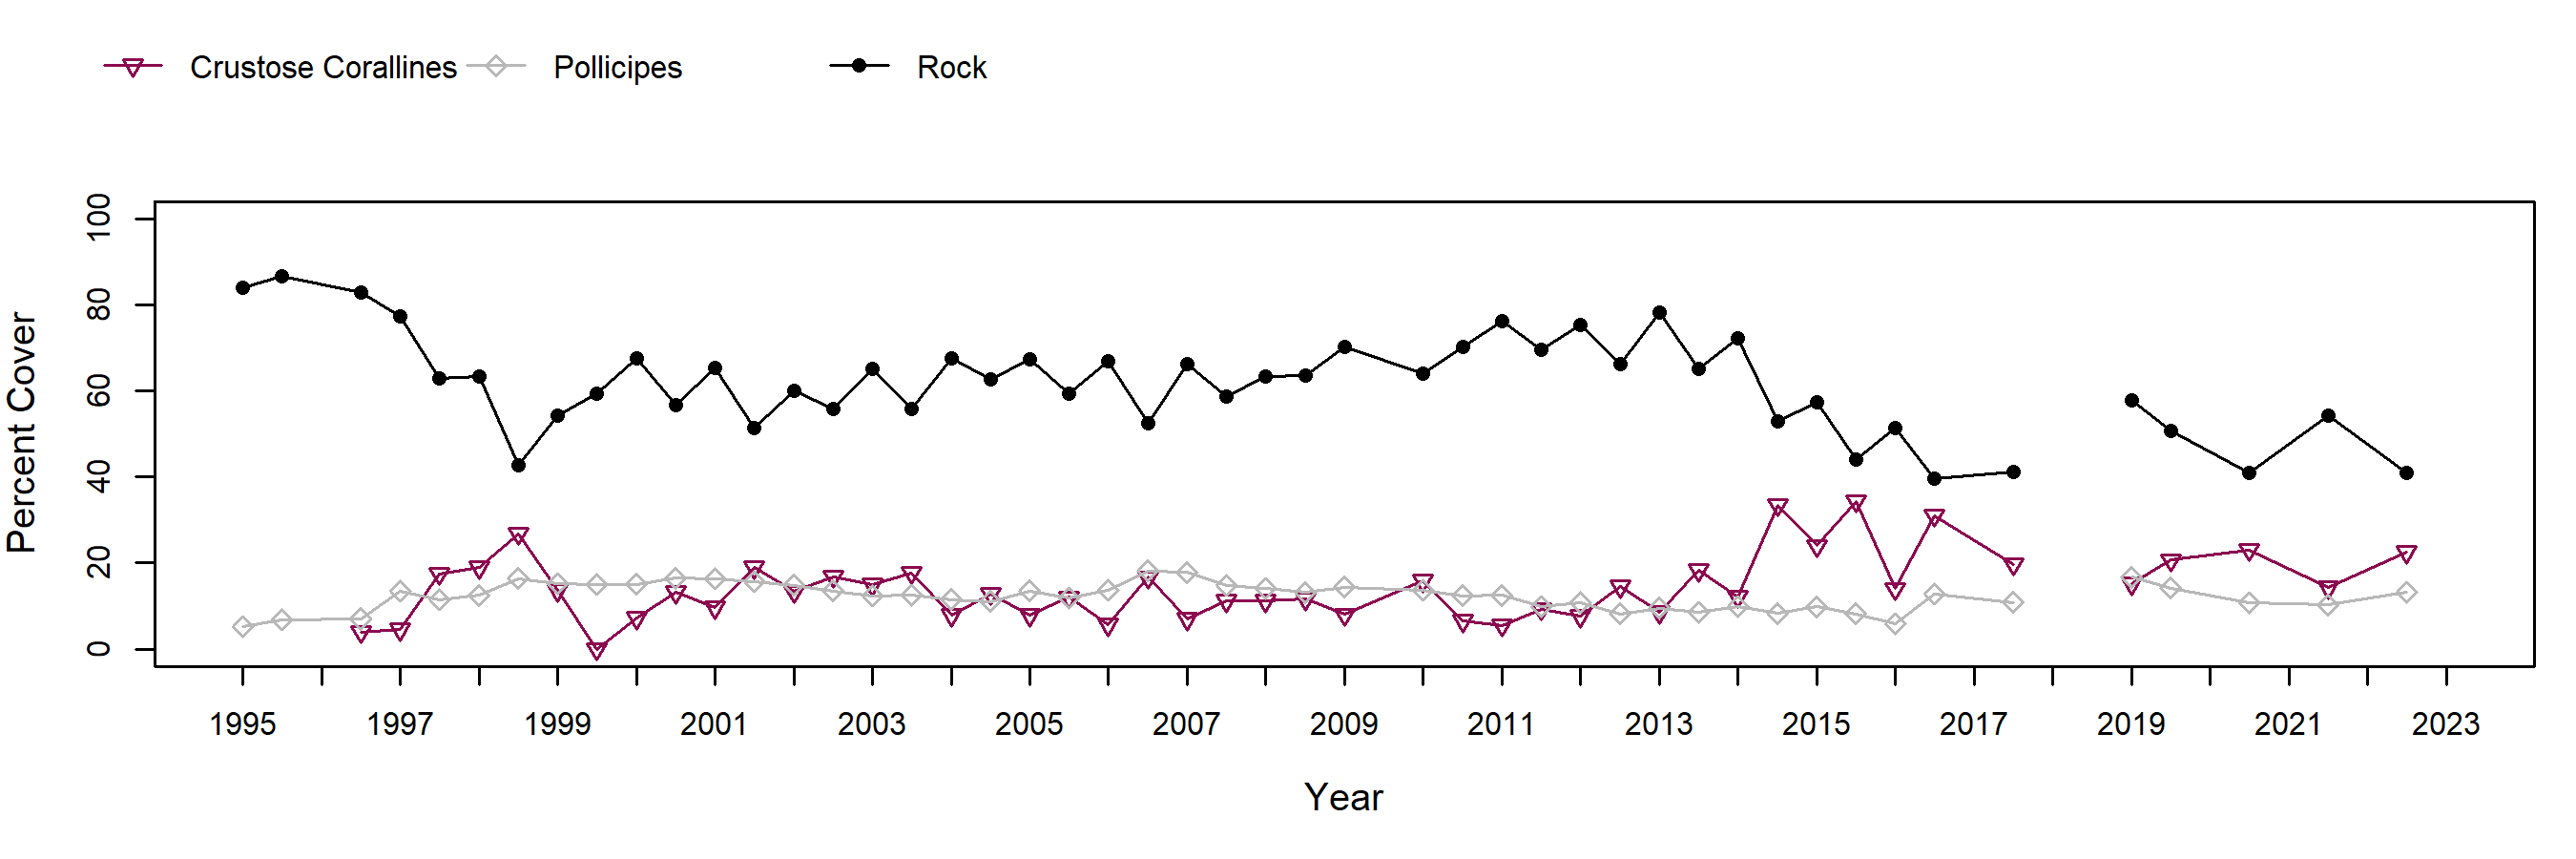 Cabrillo I Pollicipes trend plot